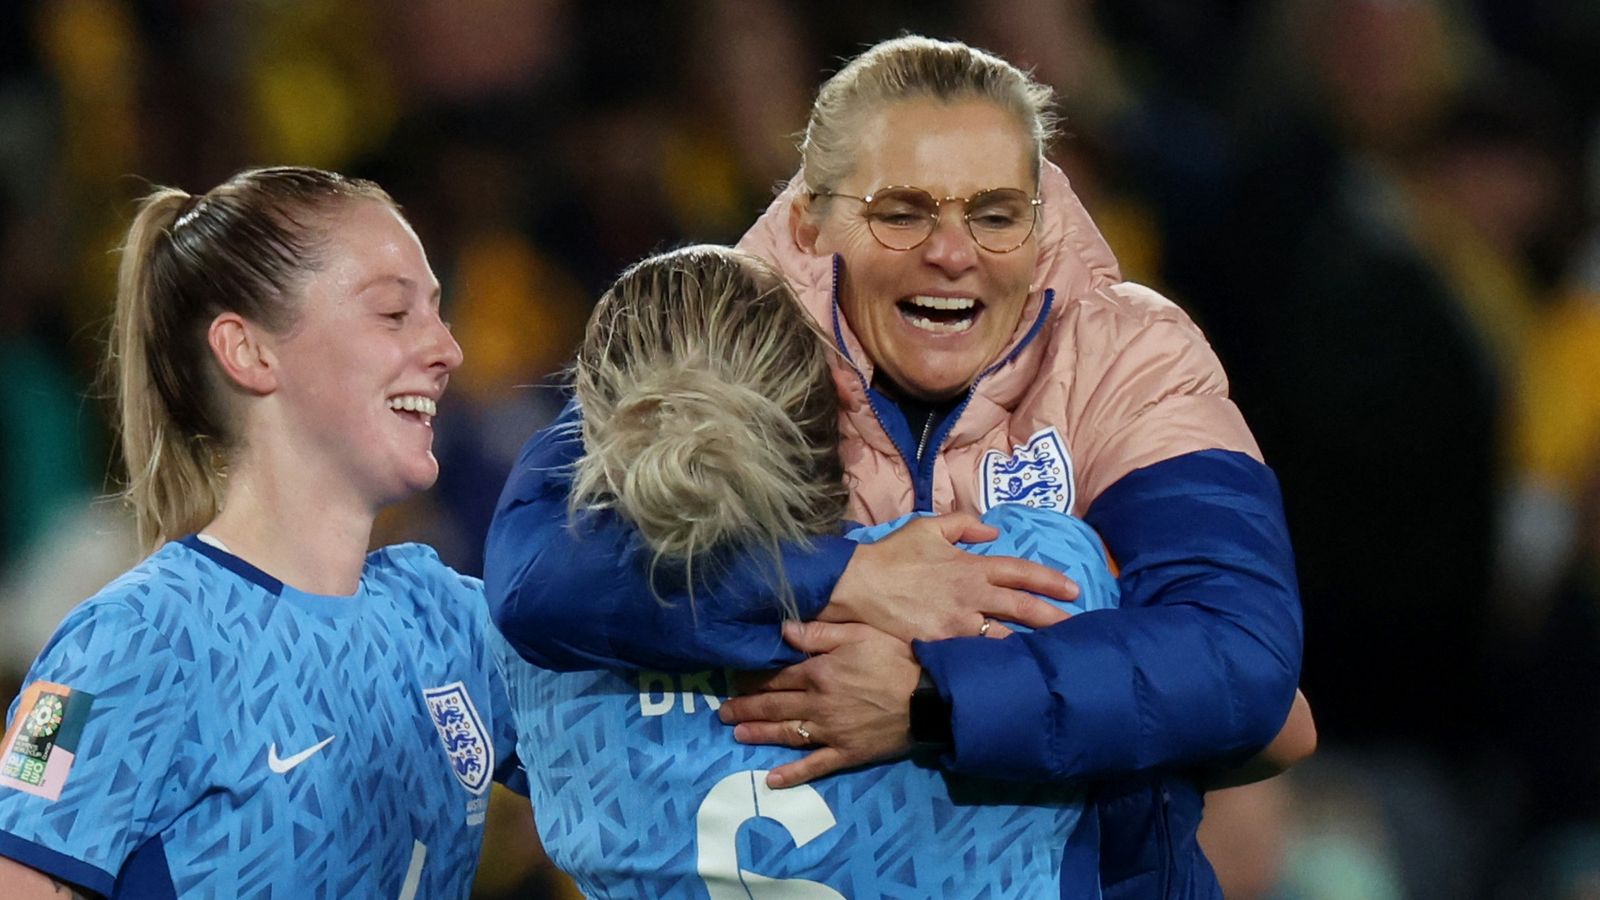 Inghilterra: le leonesse vivono una “favola” dopo aver raggiunto per la prima volta la finale della Coppa del Mondo femminile |  notizie dal mondo